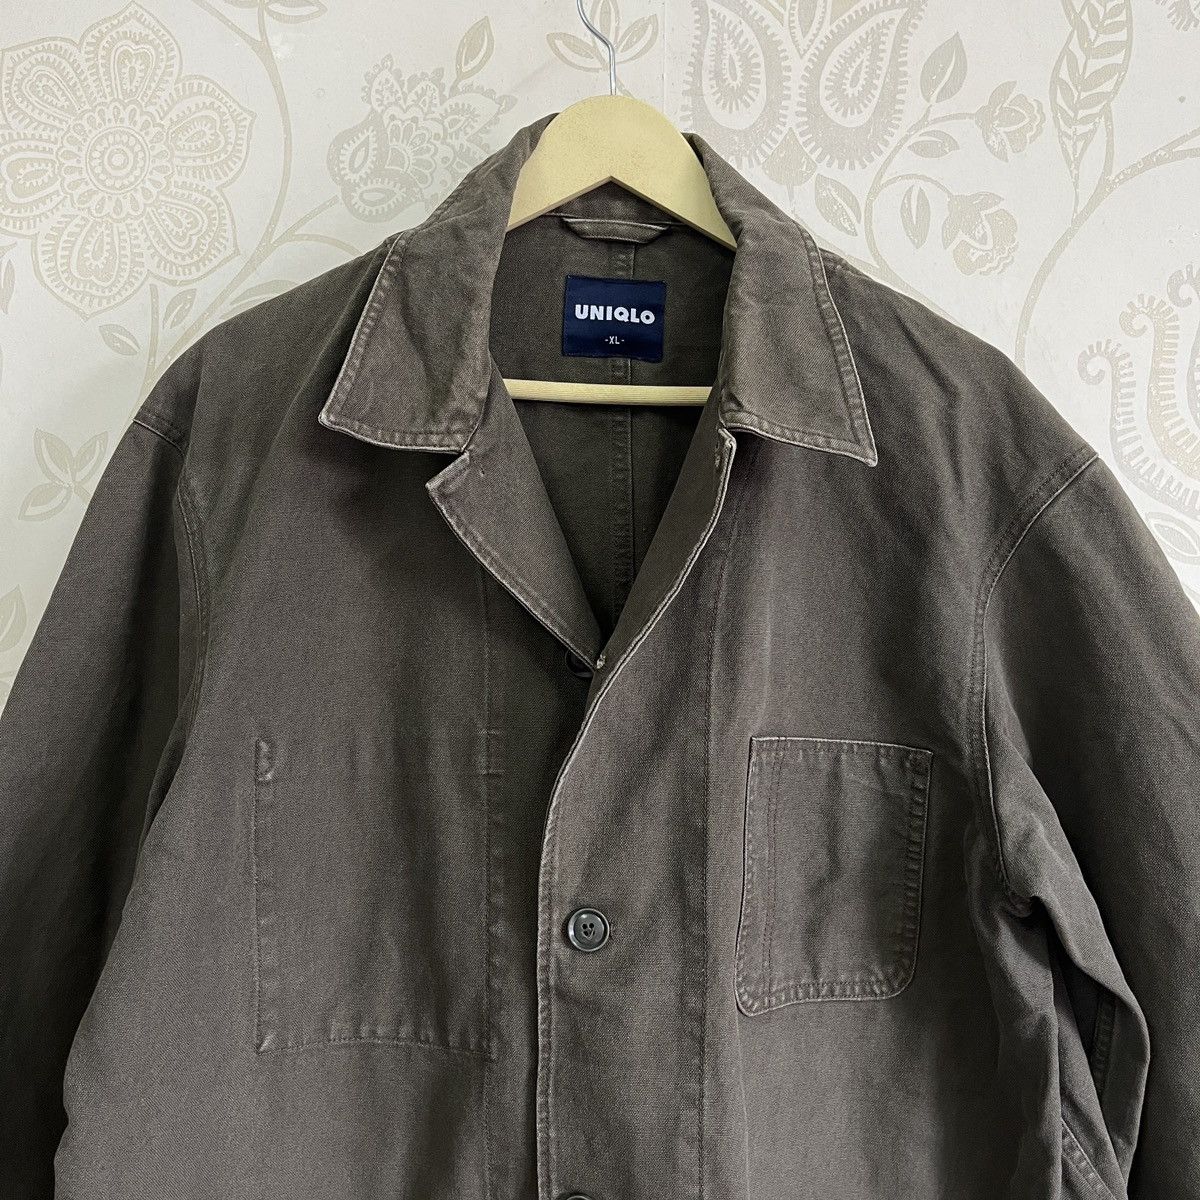 Uniqlo Chore Jacket Japan Size XL - 19